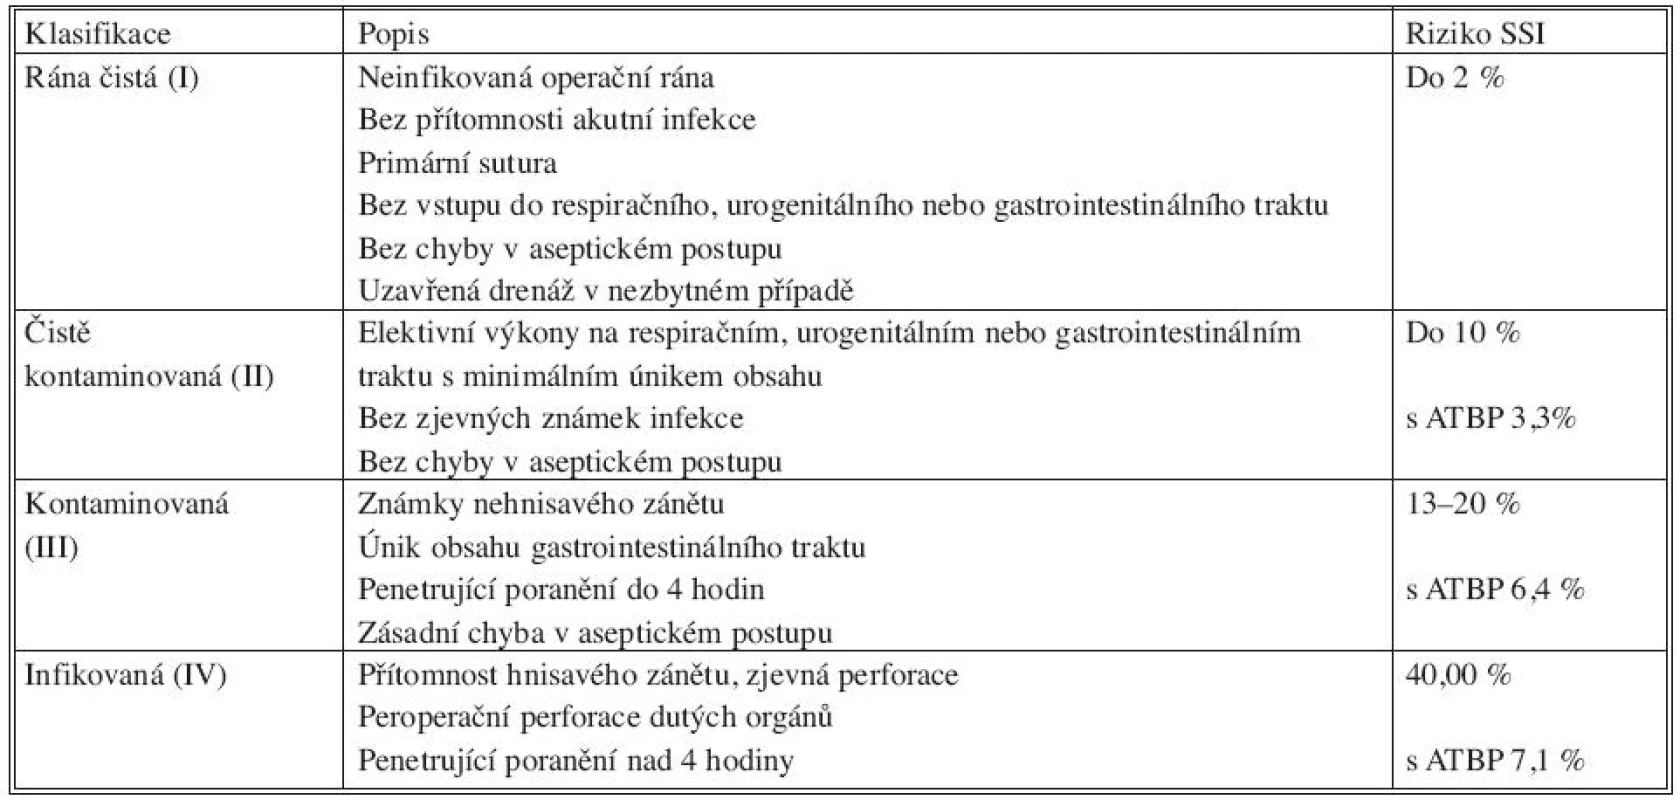 Klasifikace operačního pole podle kontaminace
Tab. 6. Classification of the operating field, based on its contamination